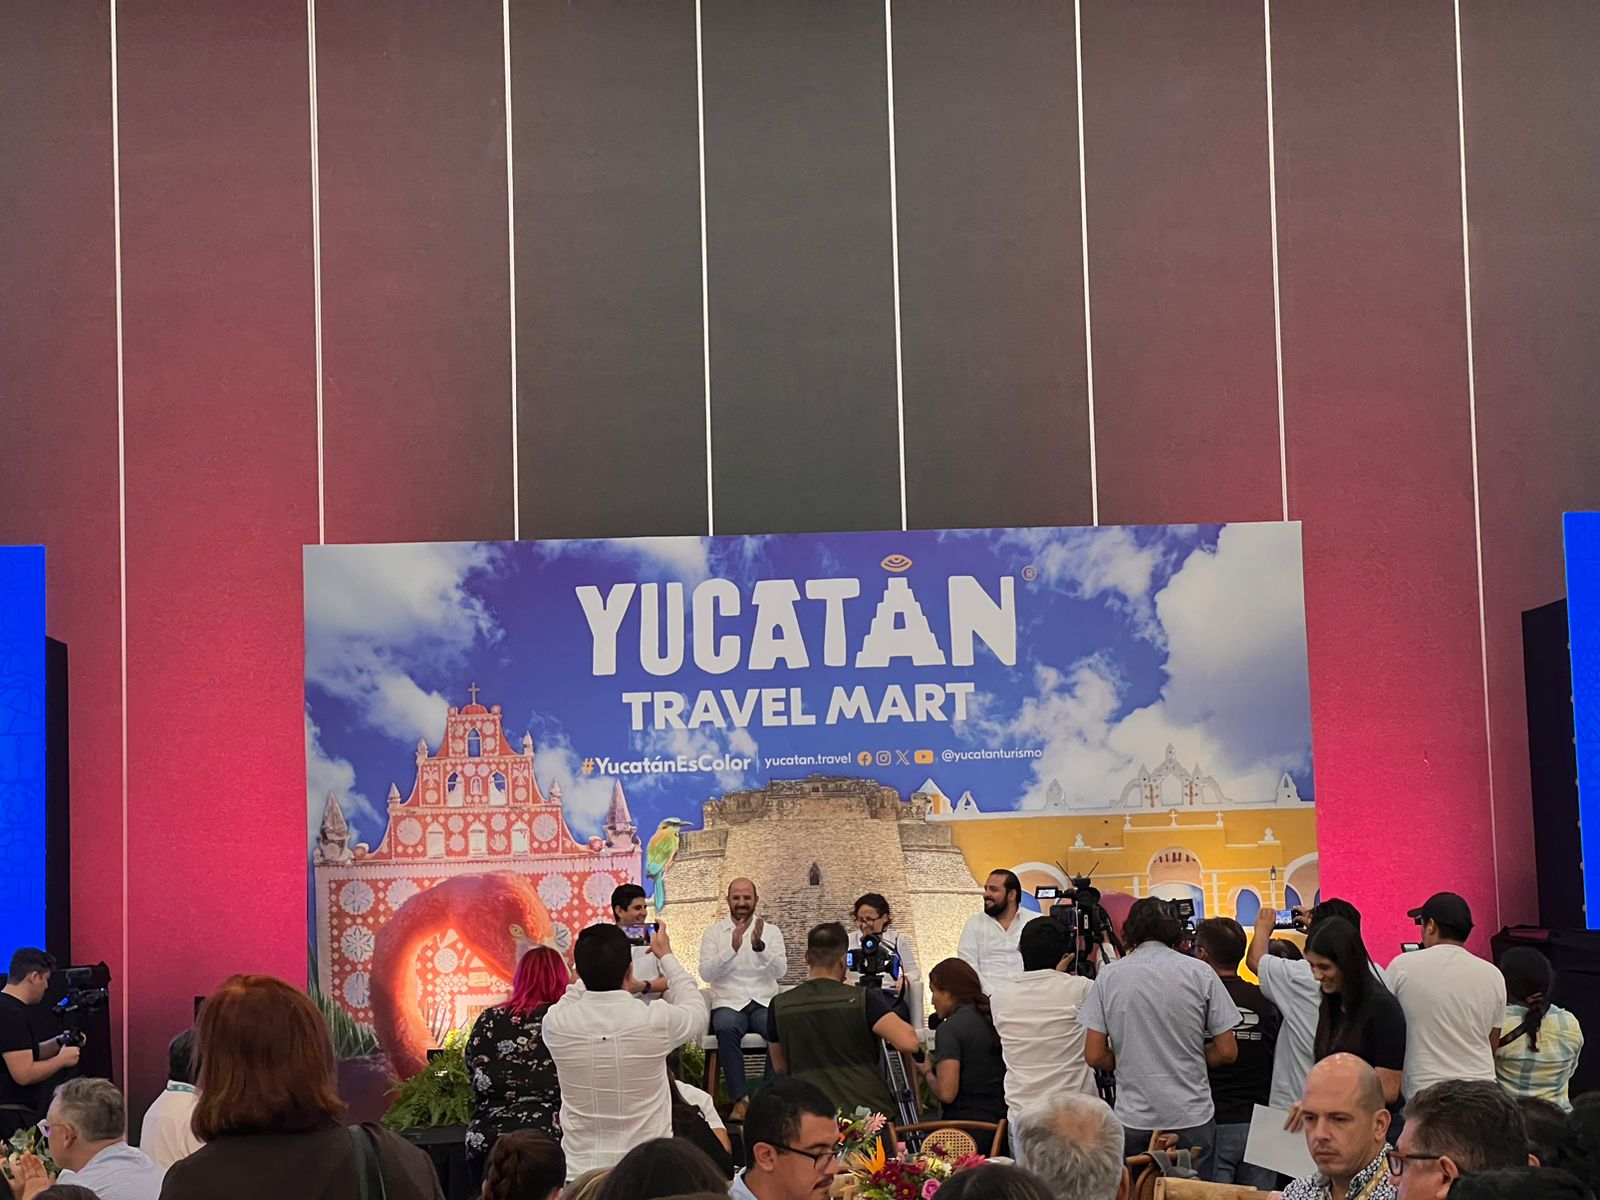 Los platillos yucatecos y sus fusiones entre los principales atractivos para captar turismo